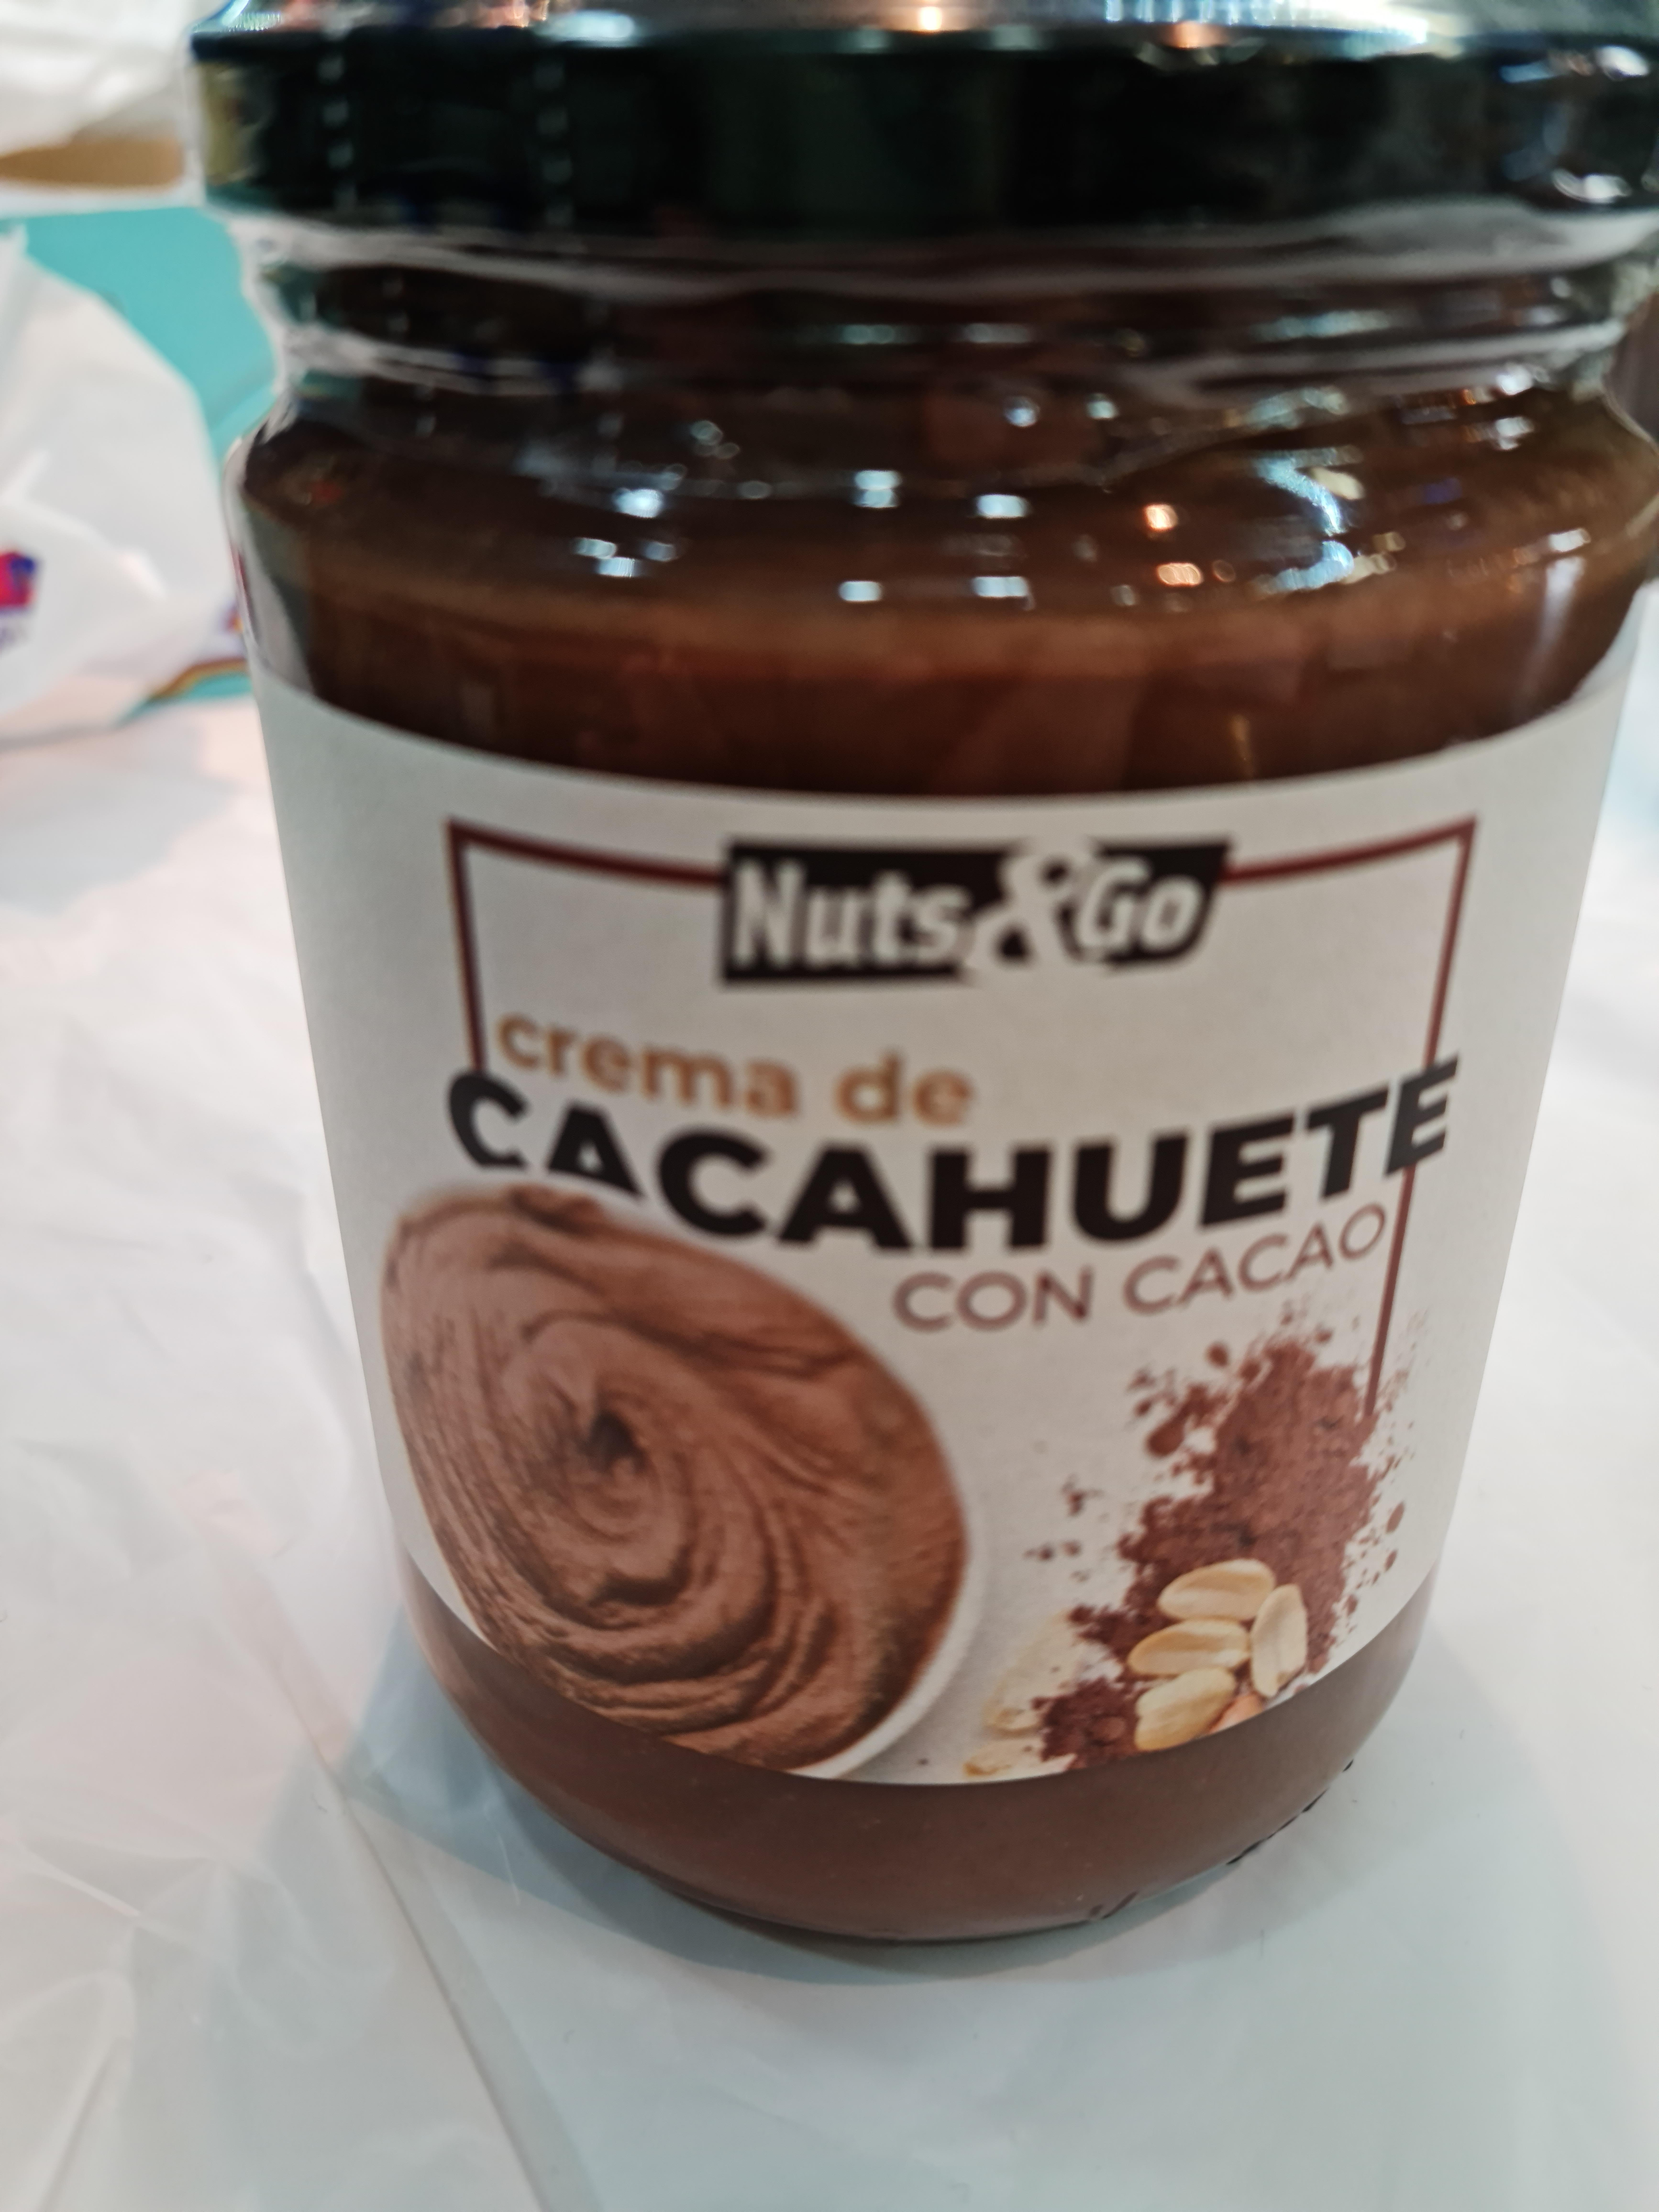 Nuts&go - Crema de cacahuete con cacao